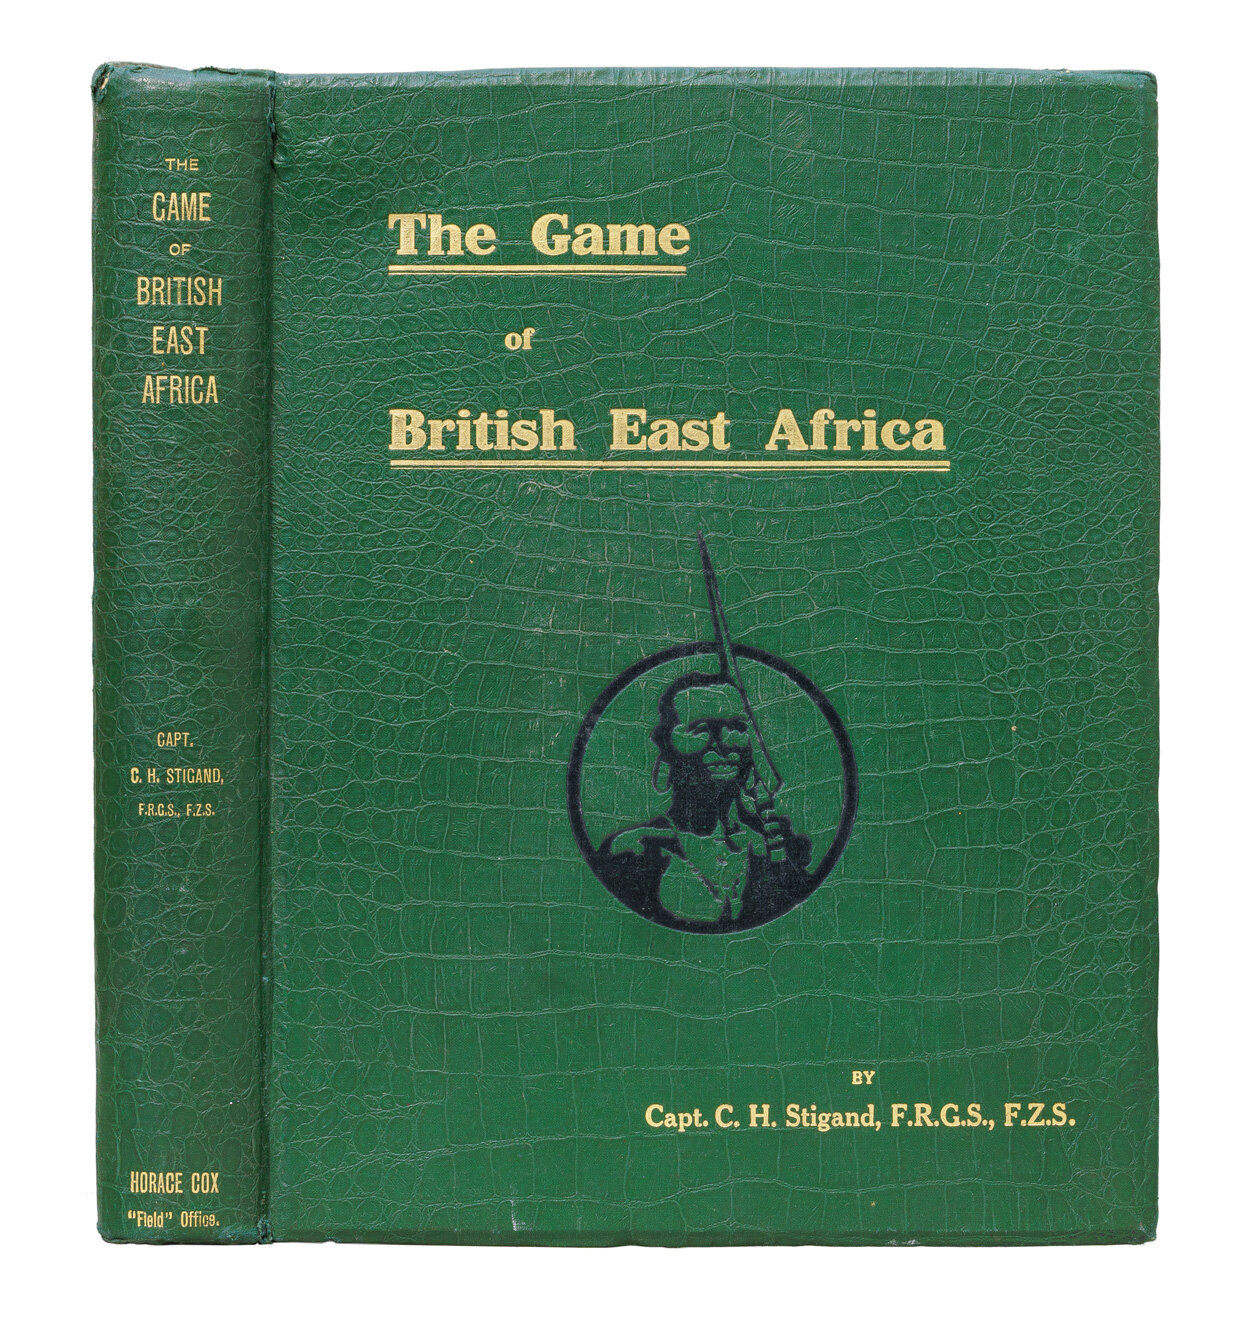 Stigand, C. H. "The game of British East Africa (Игра Британской восточной Африке)."